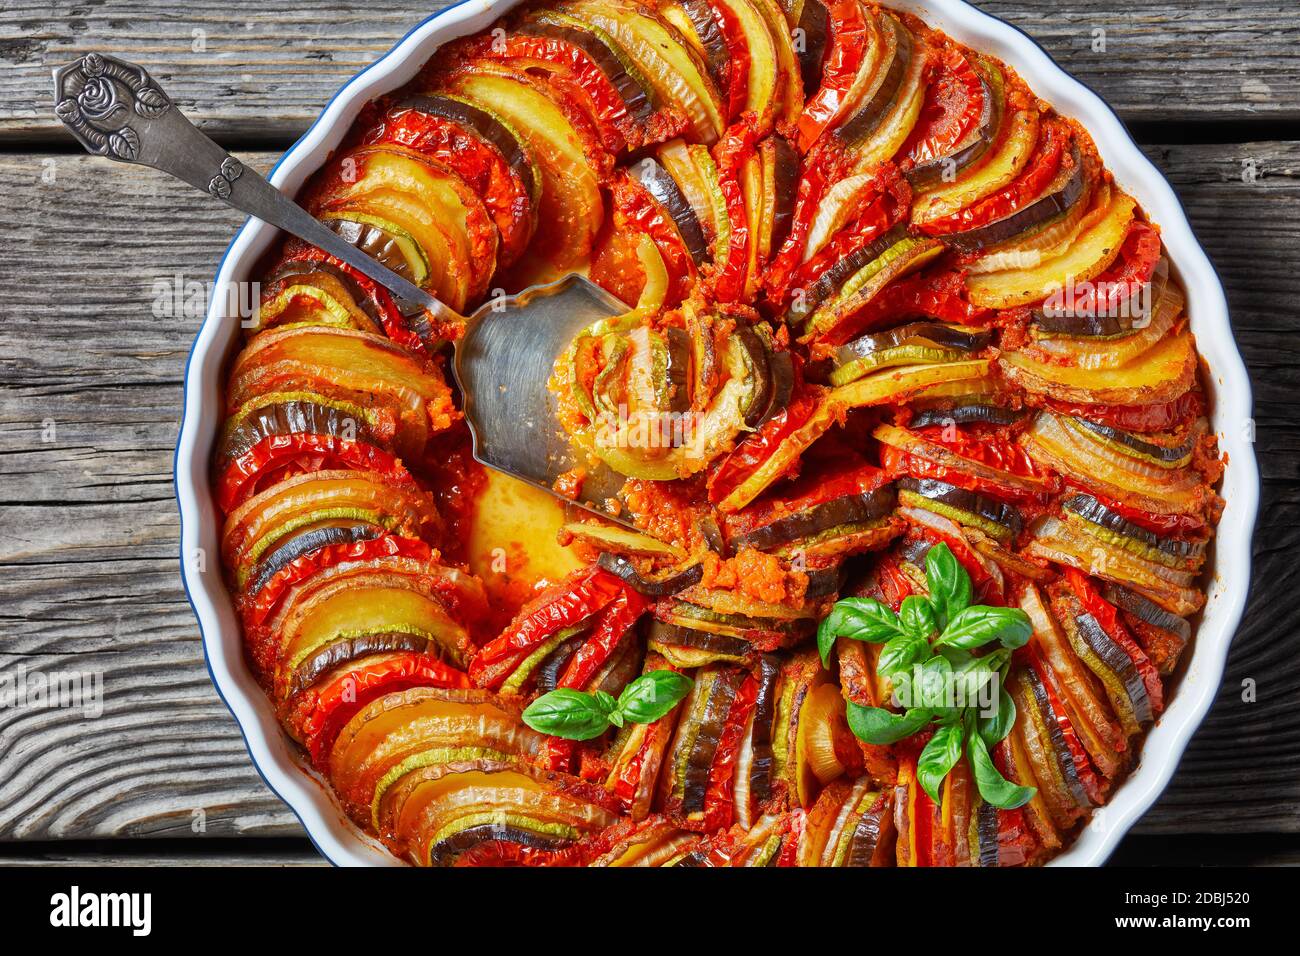 ratatouille, ragoût de légumes en tranches d'aubergines, courgettes, oignons et pommes de terre avec sauce tomate, cuisine française, vue horizontale depuis le dessus, plat Banque D'Images